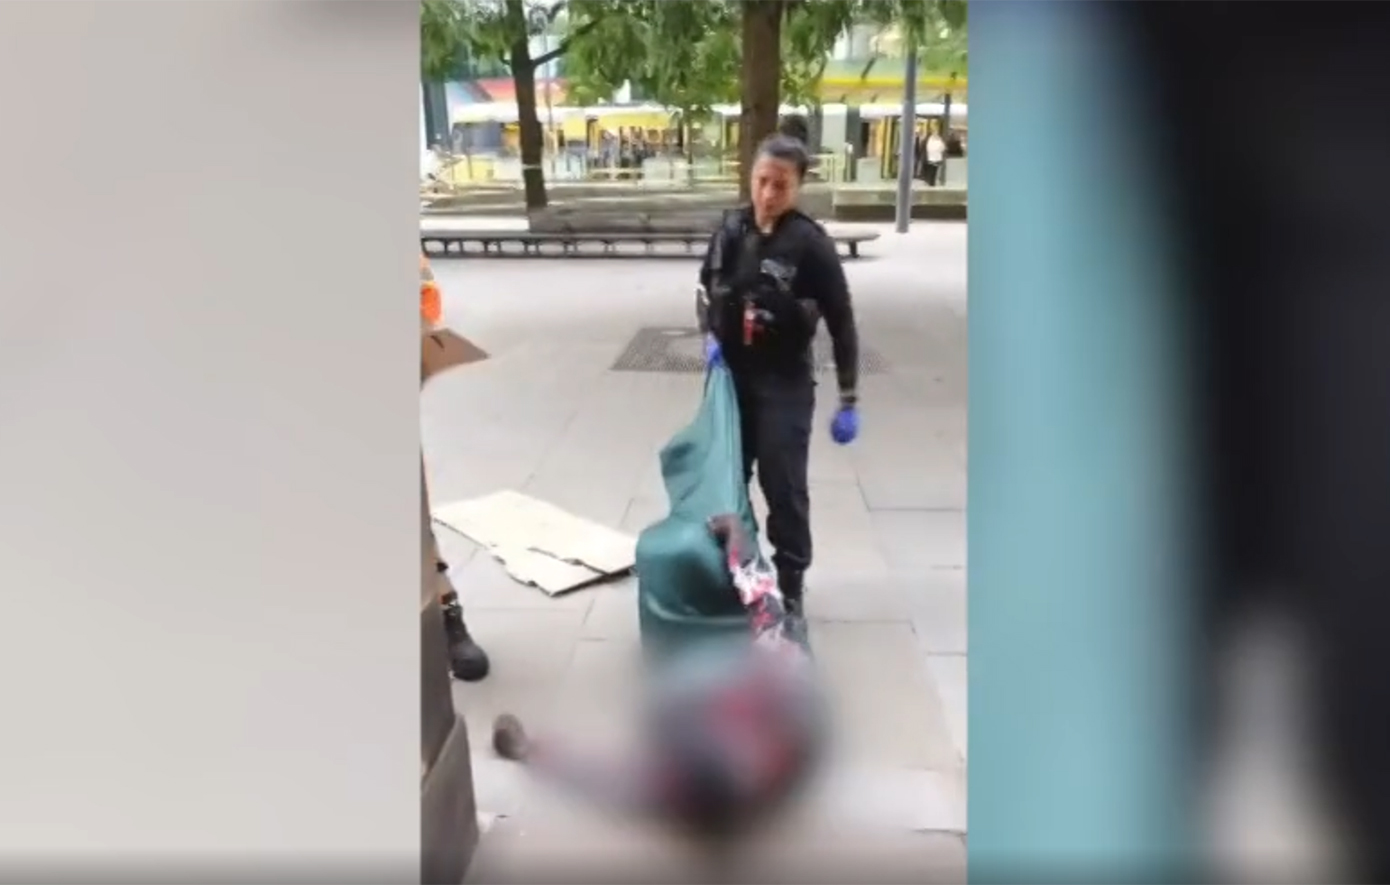 Μάντσεστερ: Αστυνομικός σέρνει άστεγο και τον πατάει στο στομάχι – Σοκαριστικό βίντεο